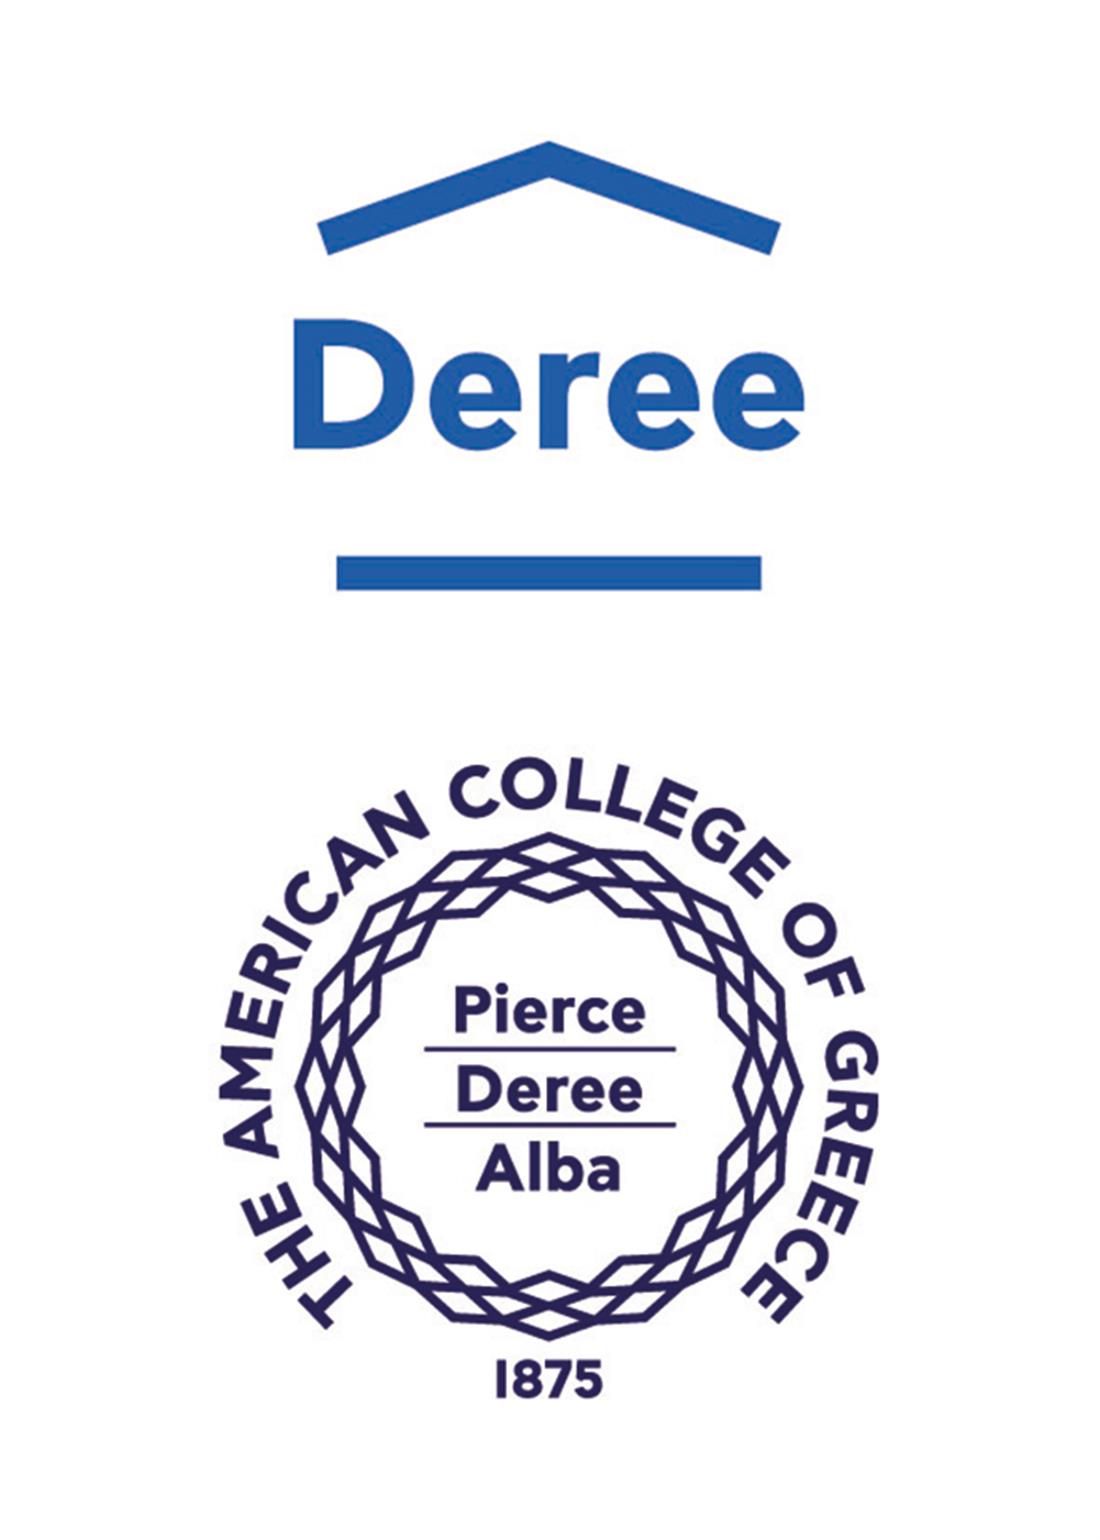 Ημερίδα γνωριμίας - Discover Deree Day - logo